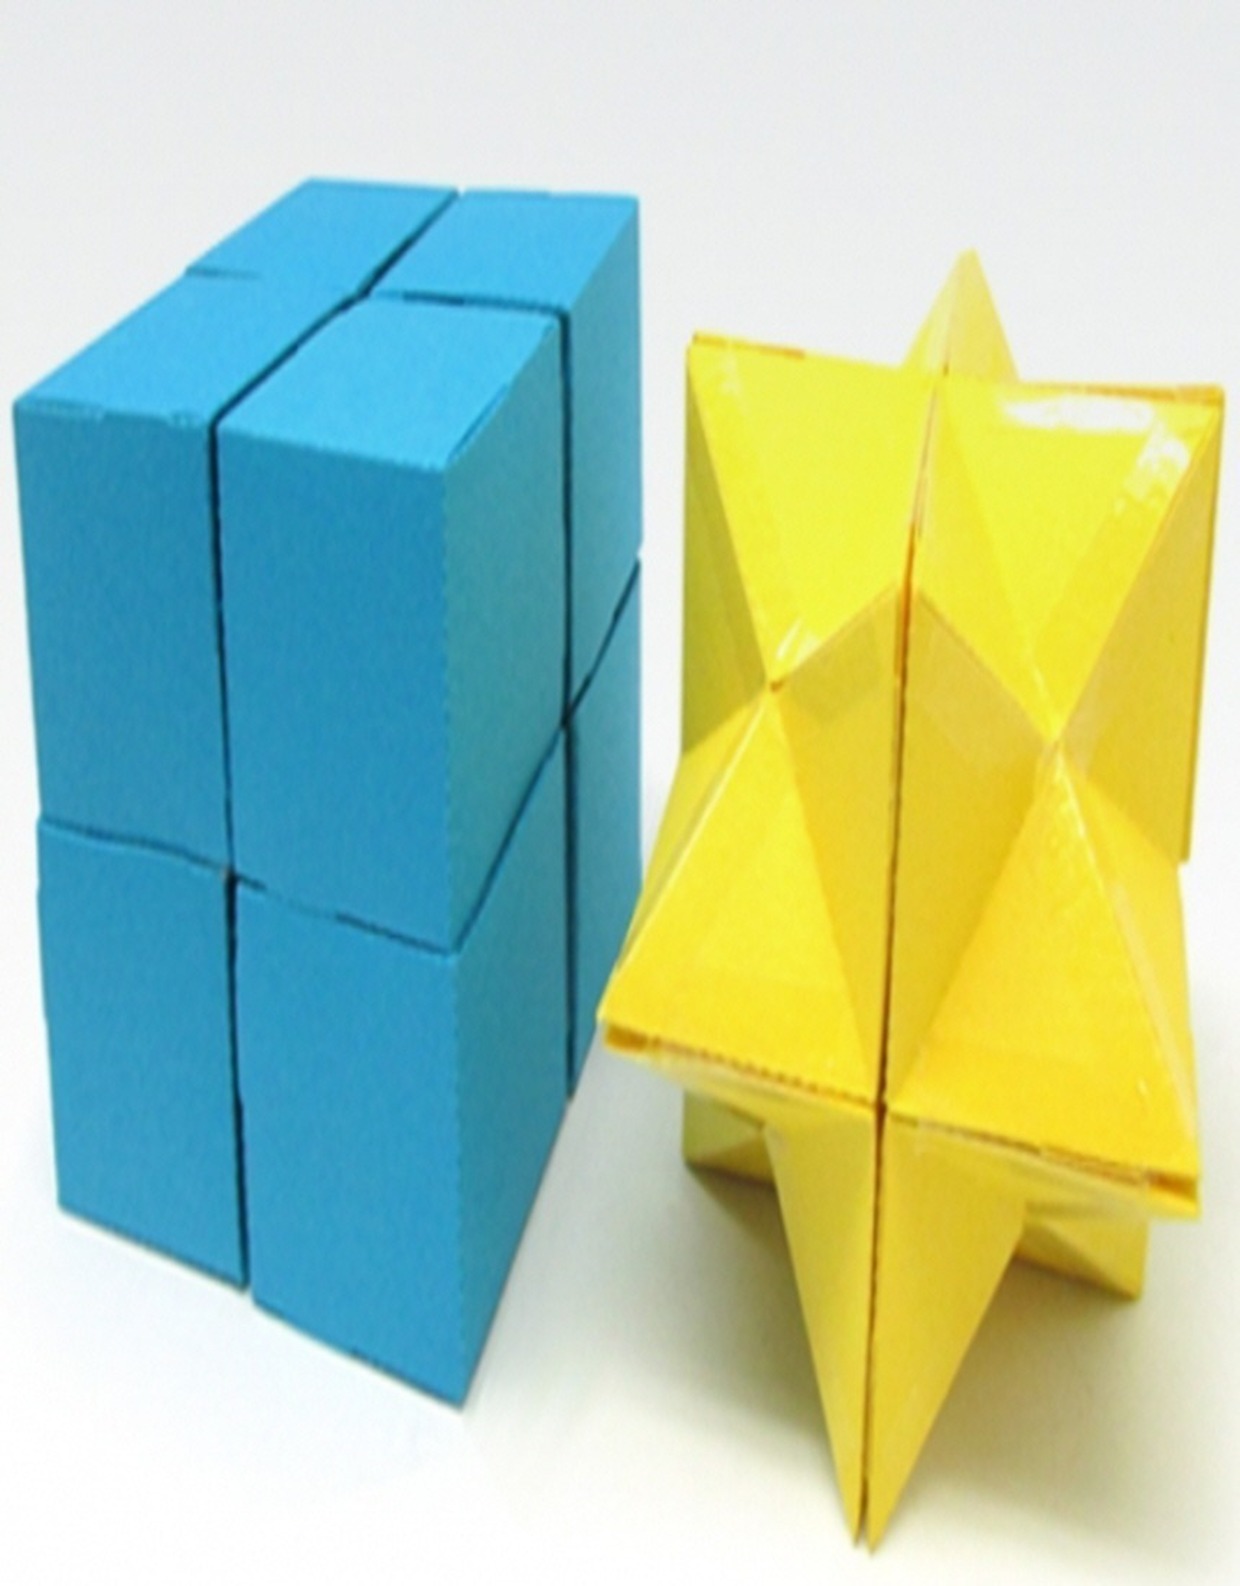 [수학체험] 요시모토 큐브 만들기 체험교실